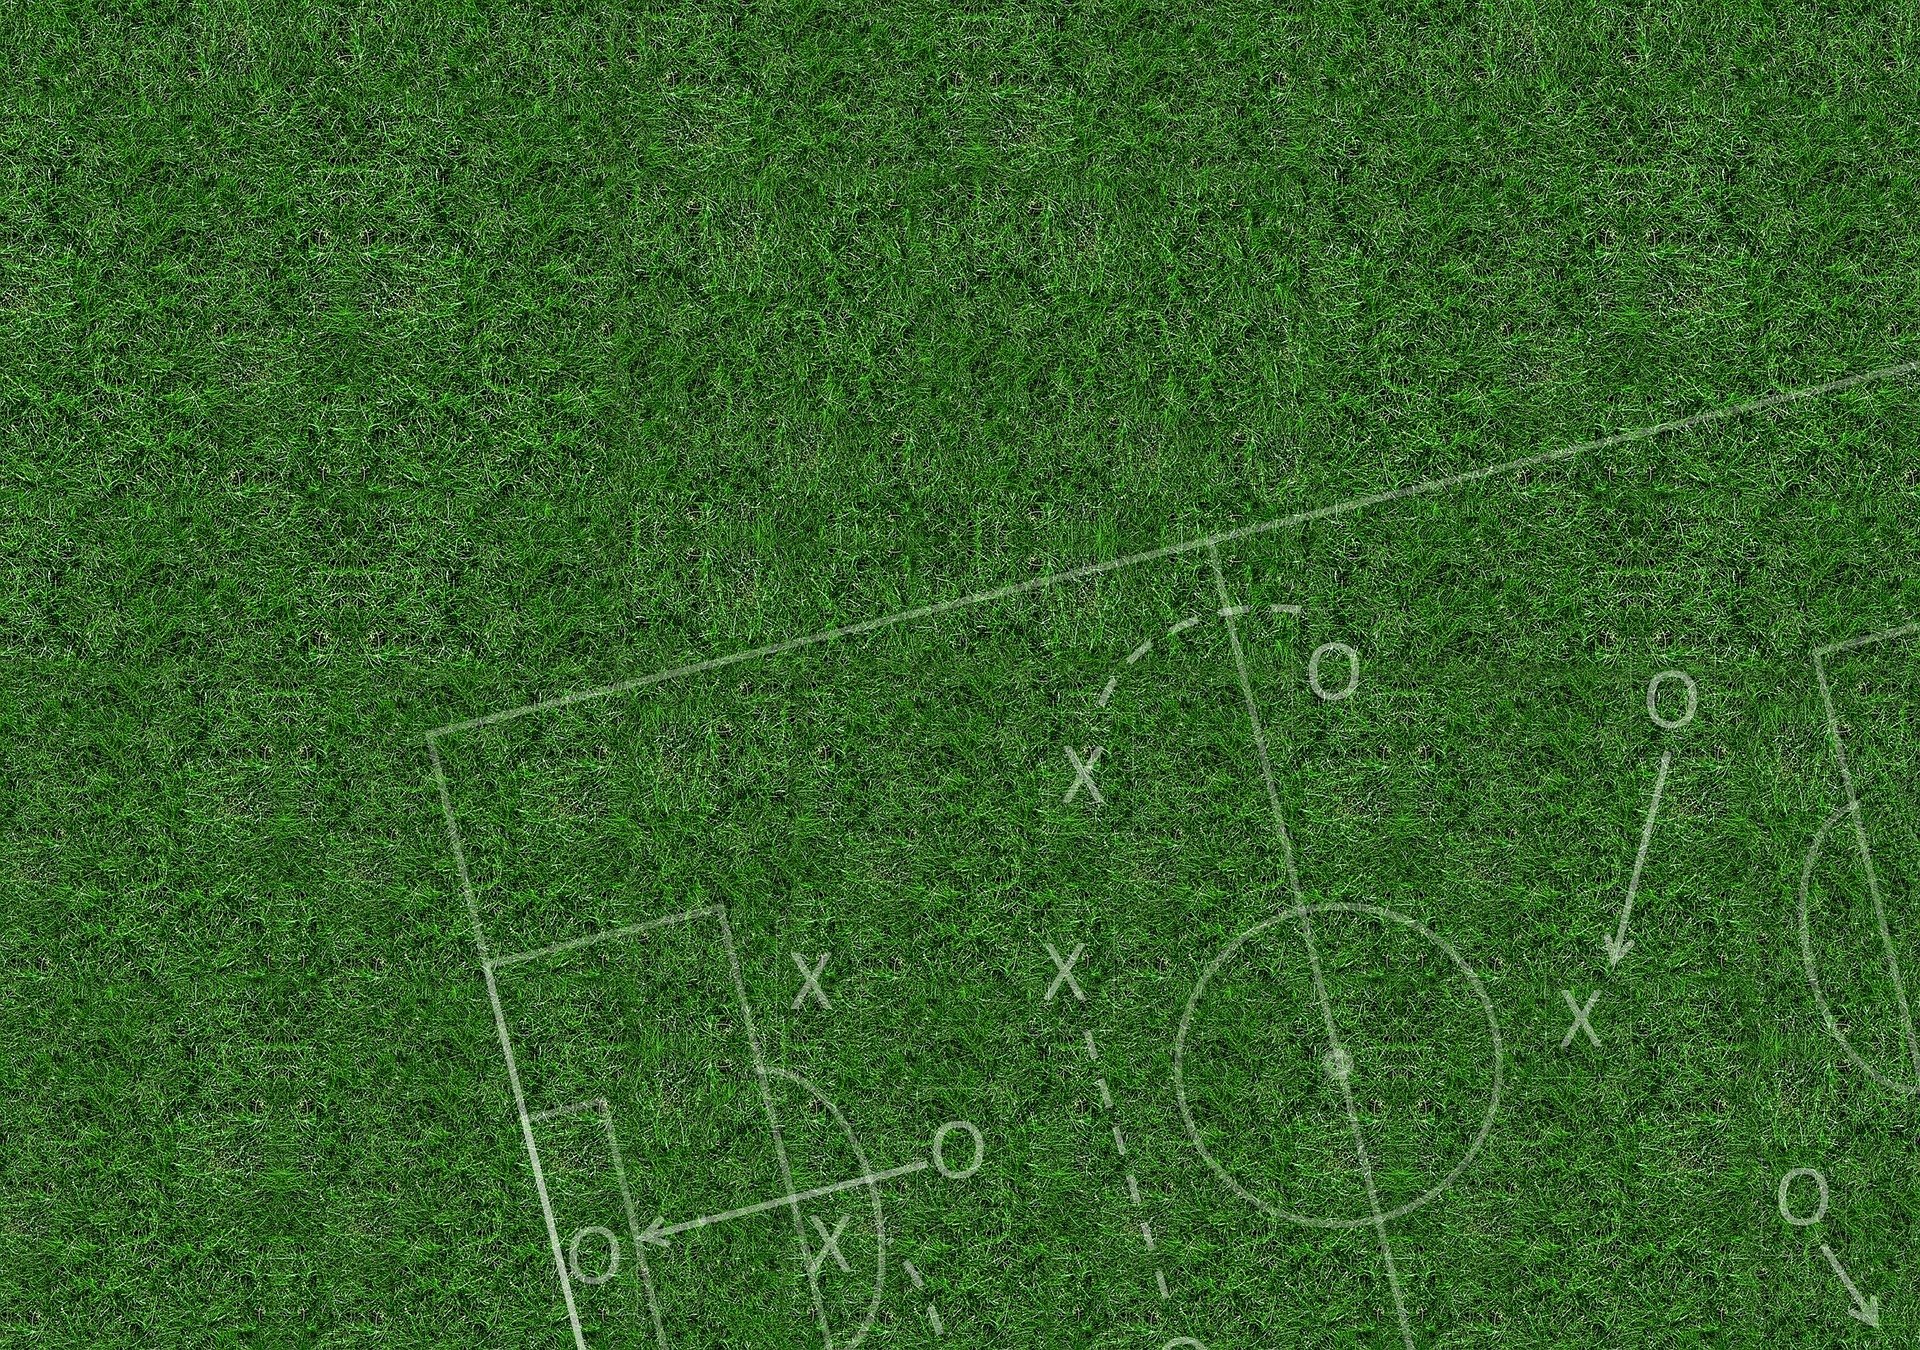 Fußballplatz | Bildquelle: Pixabay